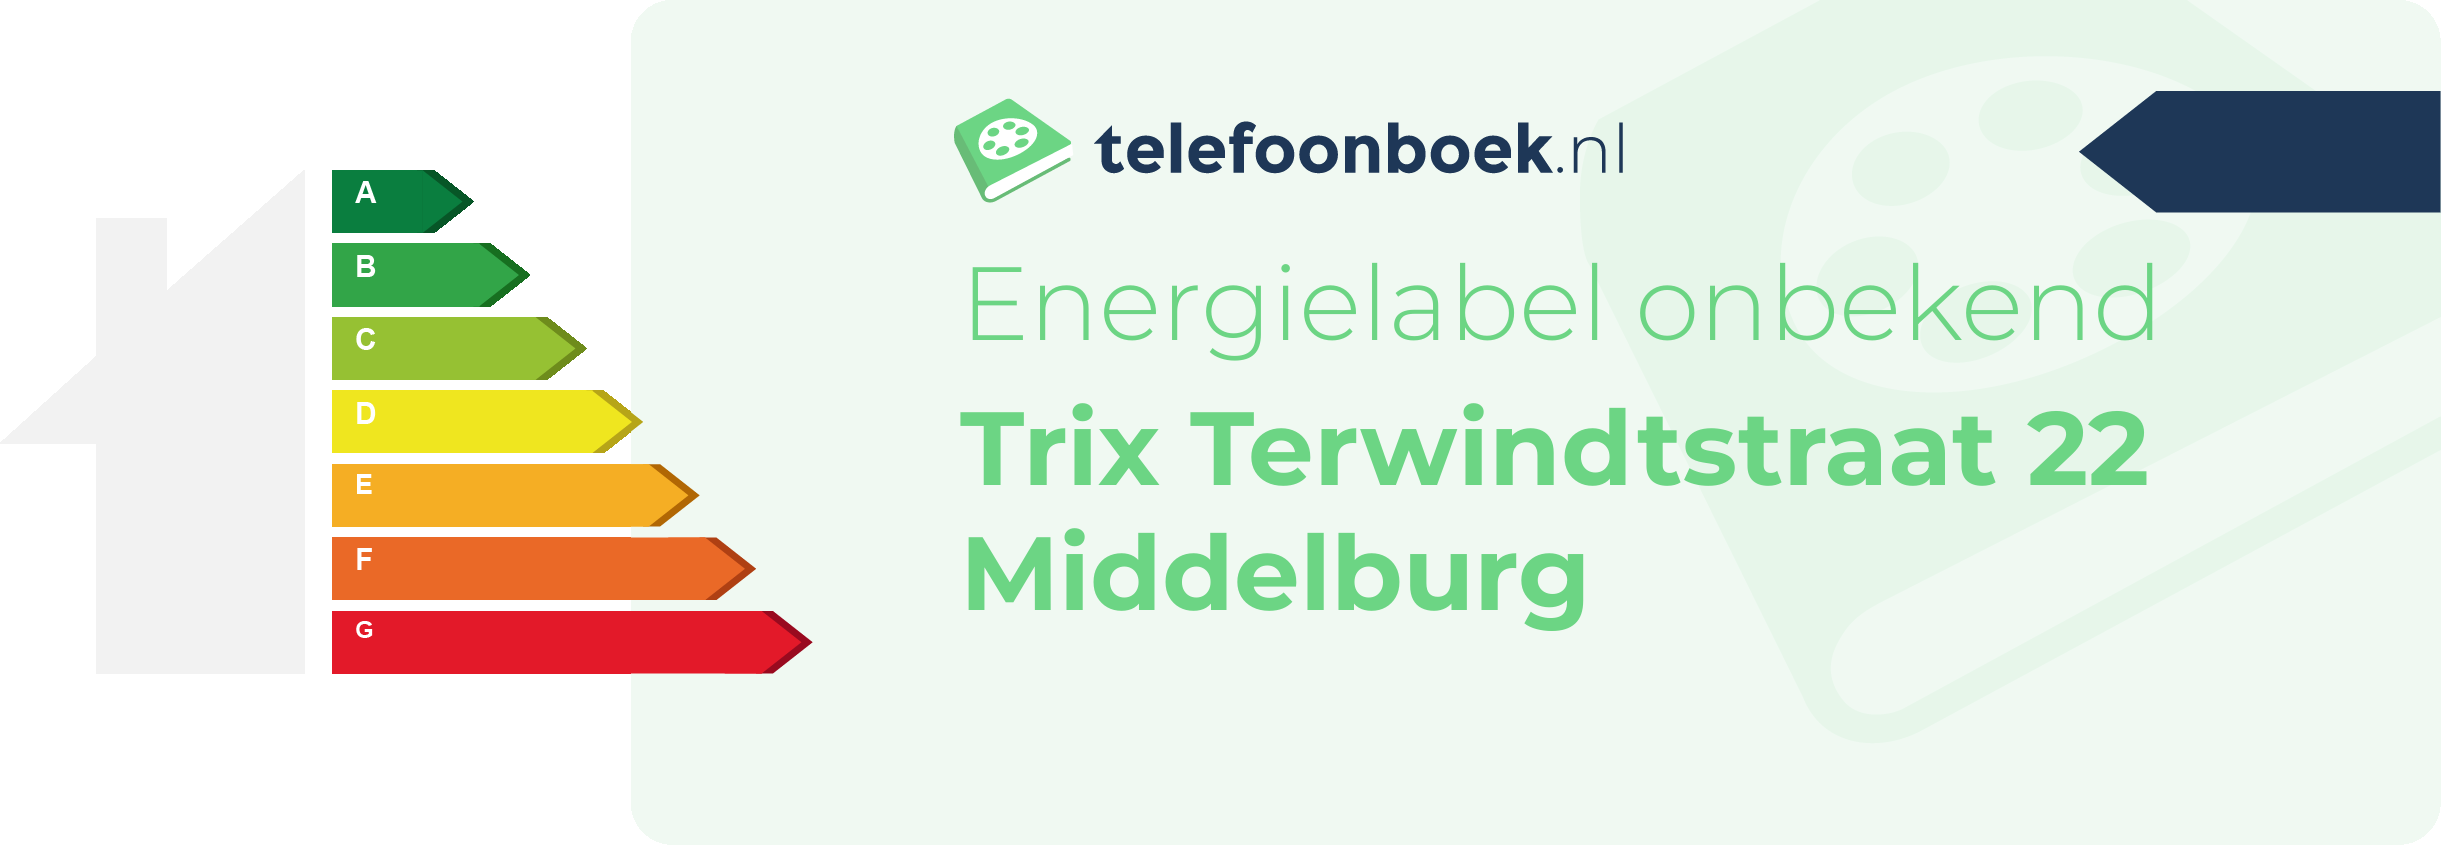 Energielabel Trix Terwindtstraat 22 Middelburg